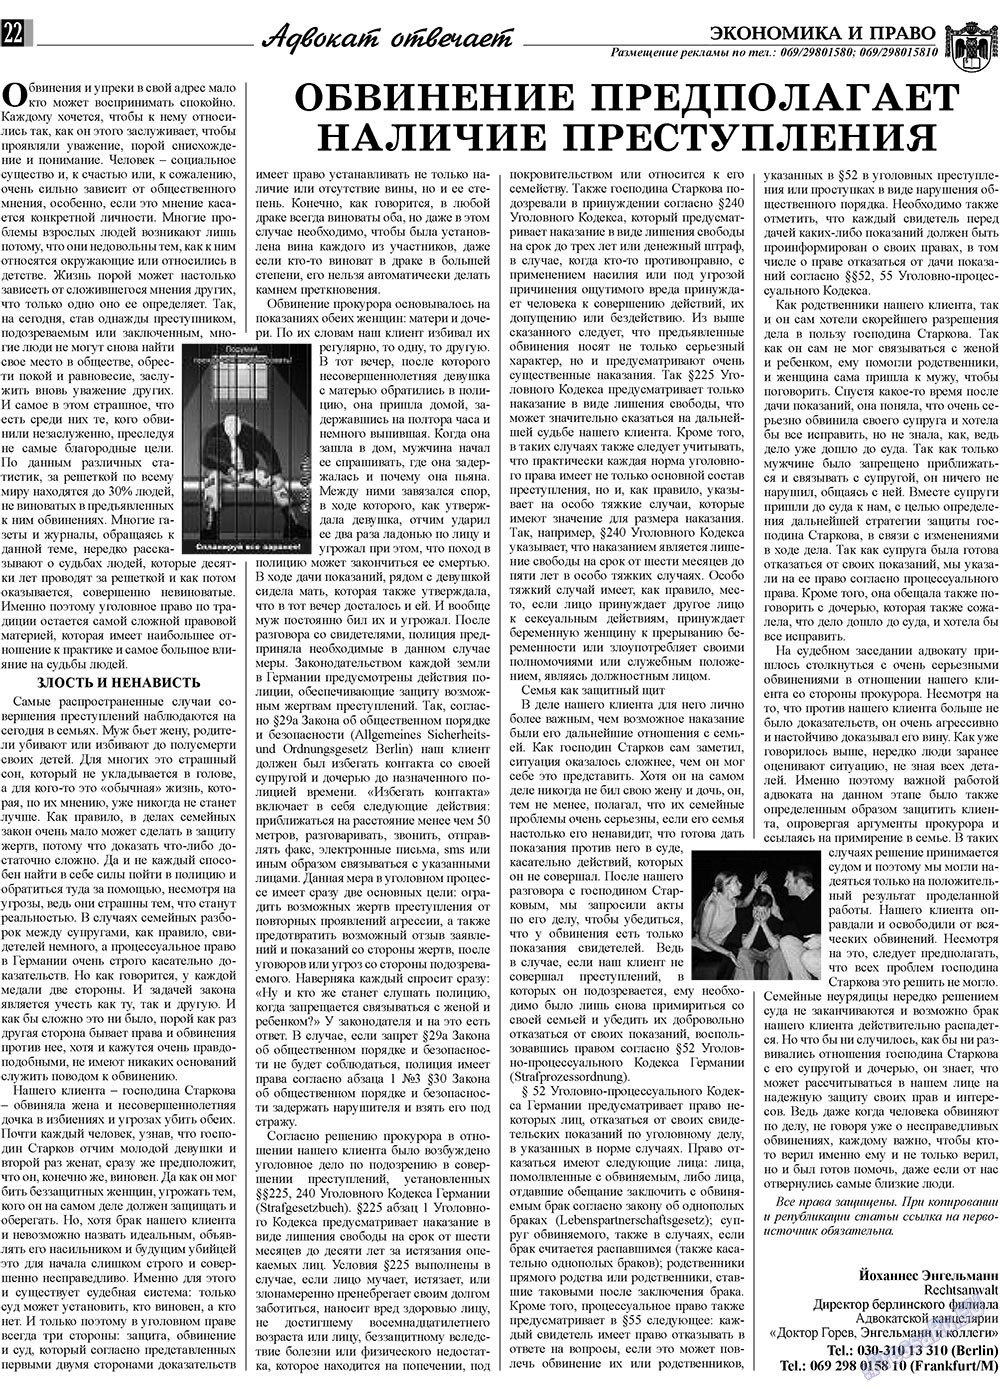 Экономика и право, газета. 2010 №1 стр.22